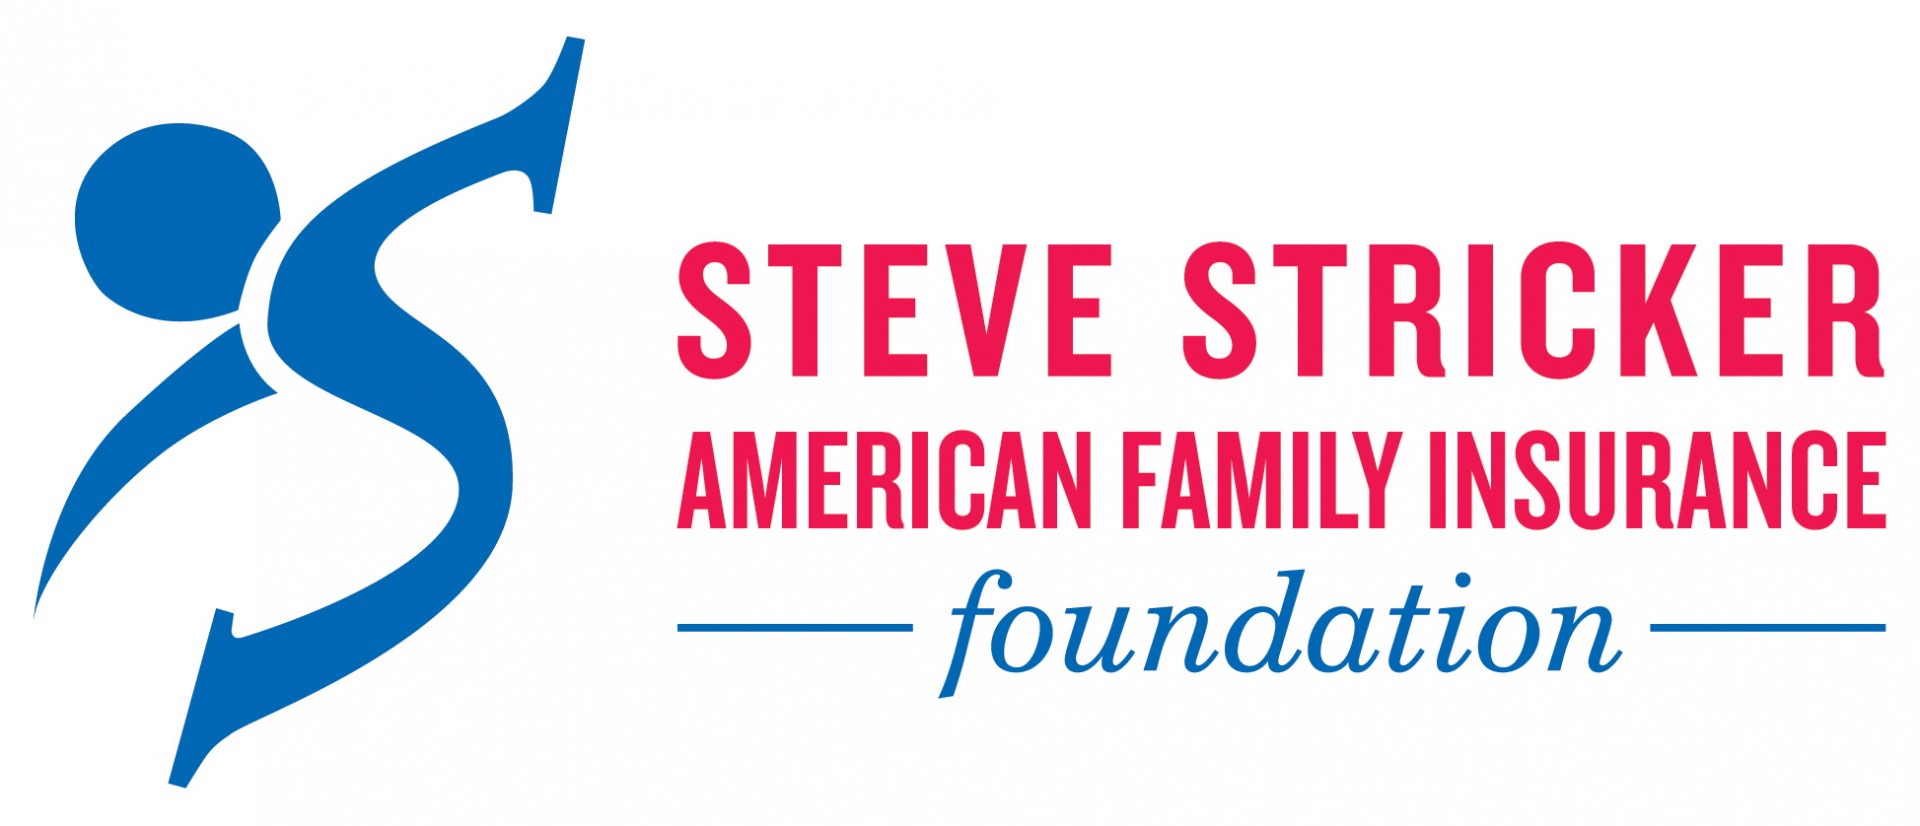 Steve Stricker American Family Insurance Foundation logo